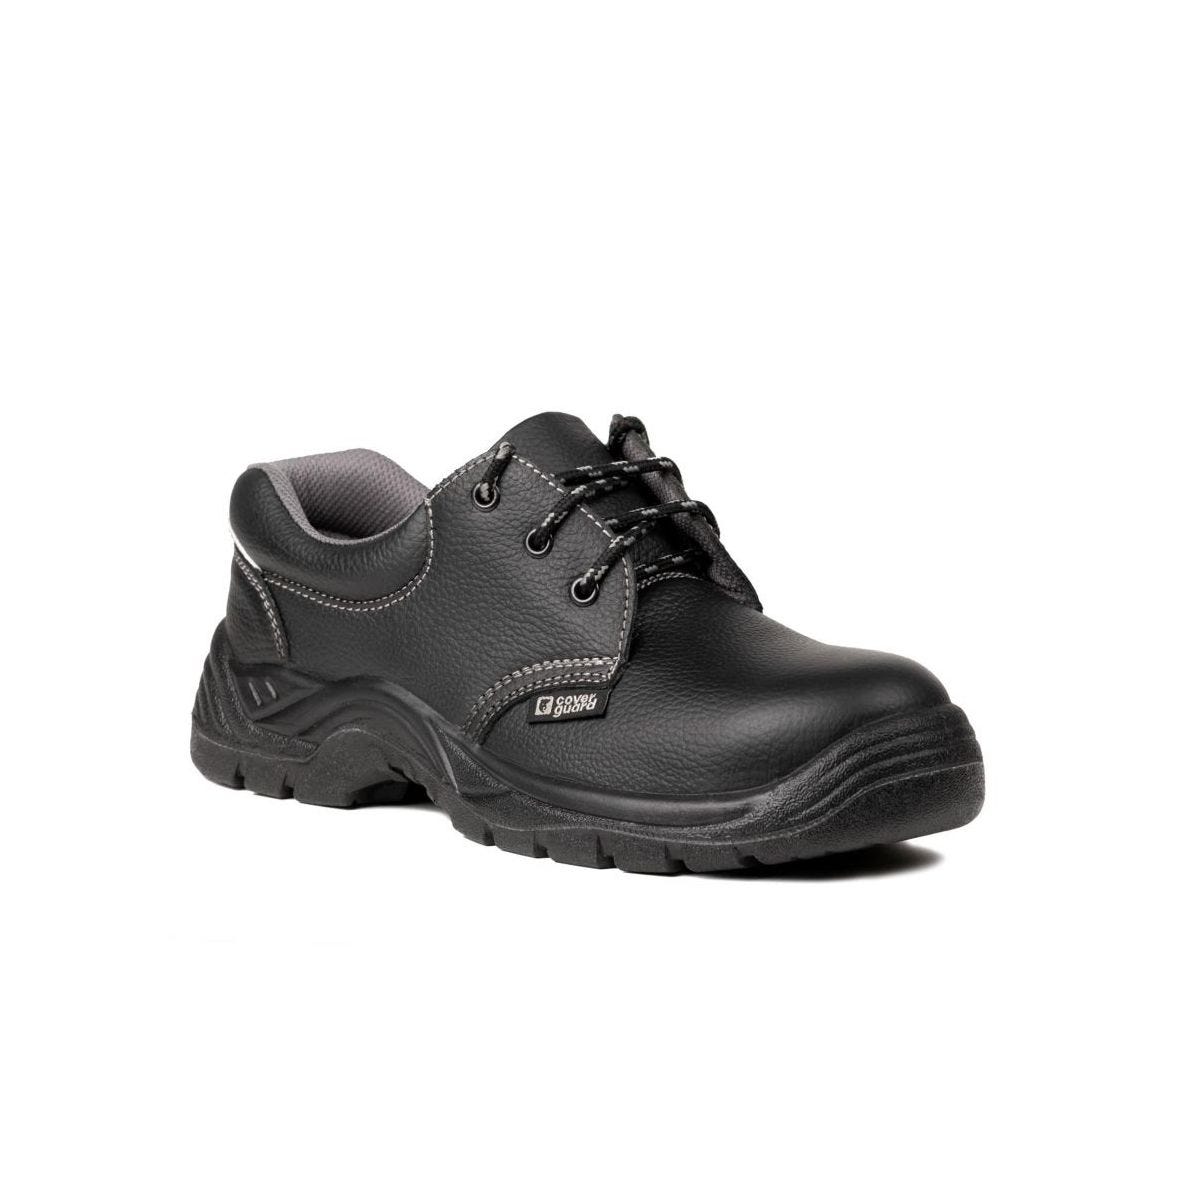 Chaussures de sécurité basses AGATE II S3 Noir - Coverguard - Taille 44 0